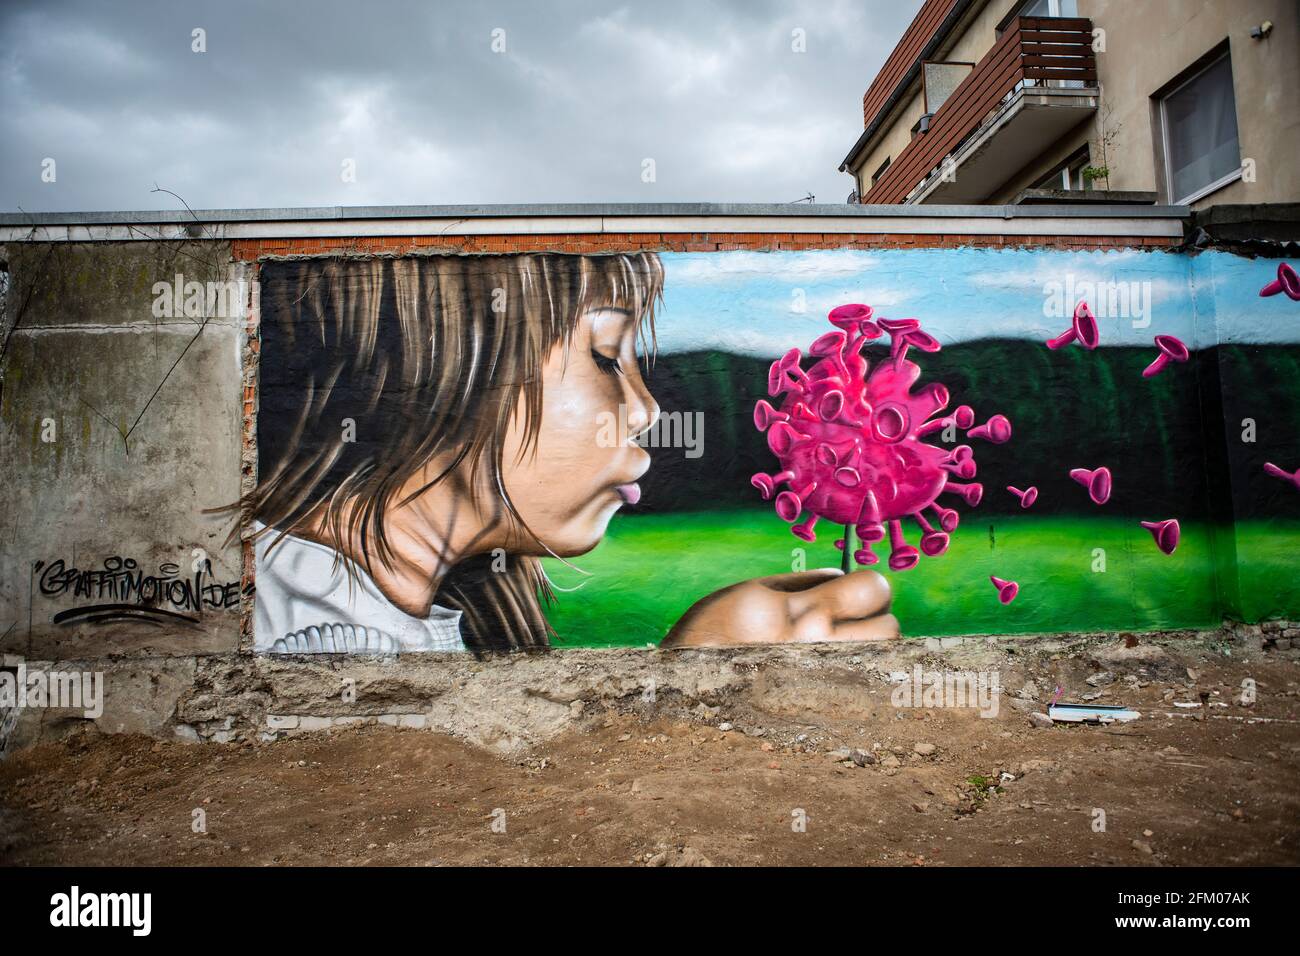 Ein Graffiti an einer alten Mauer zeigt ein Mädchen, welches wie bei einer Pusteblume ein Coronavirus anpustet, welches dann auseinander fliegt. Ein s Stock Photo